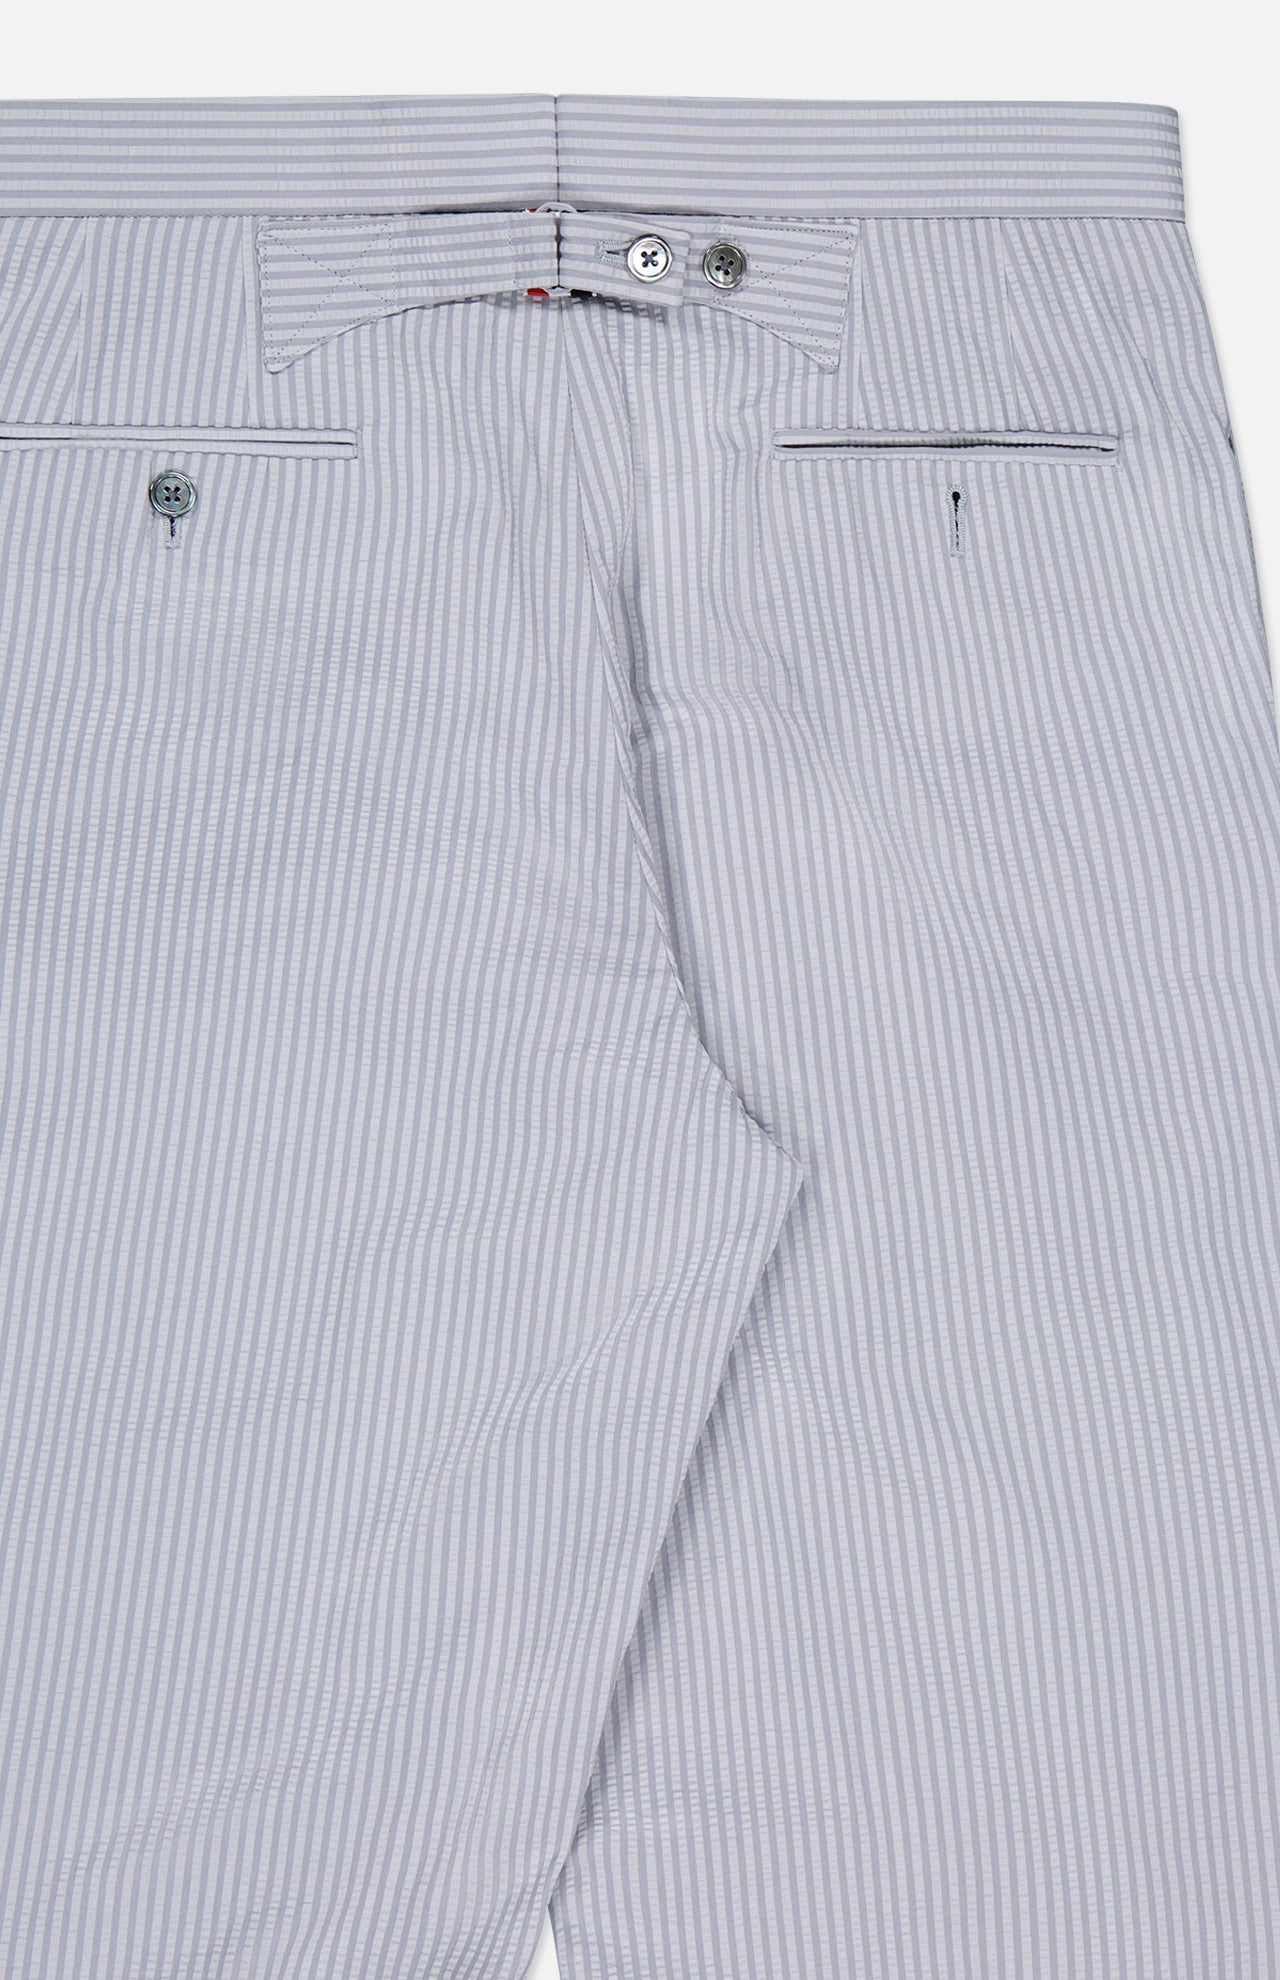 Low Rise Backstrap Trouser (7352834031731)